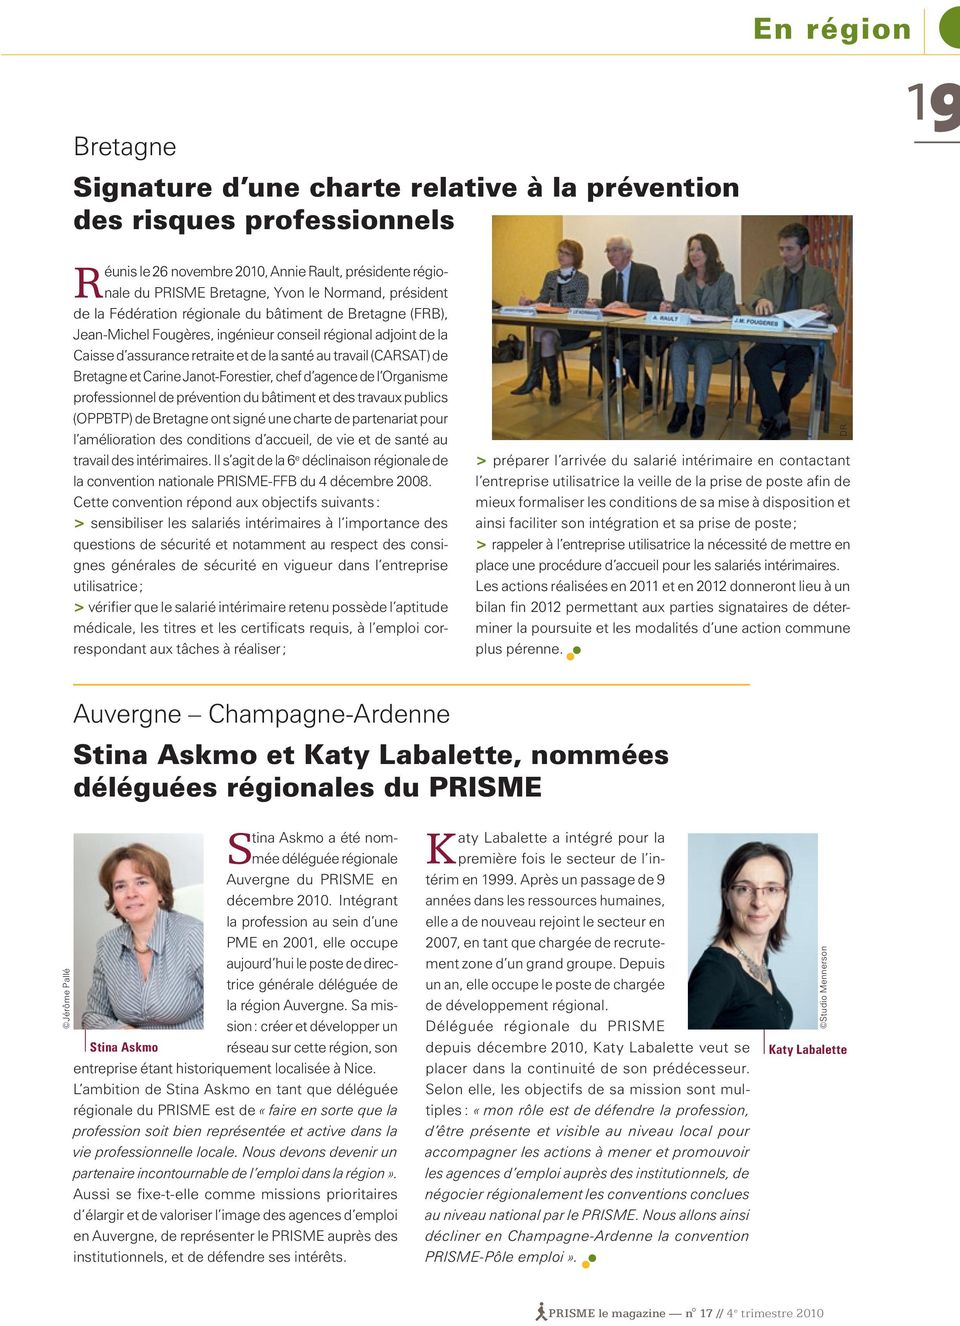 Bretagne et Carine Janot-Forestier, chef d agence de l Organisme professionnel de prévention du bâtiment et des travaux publics (OPPBTP) de Bretagne ont signé une charte de partenariat pour l